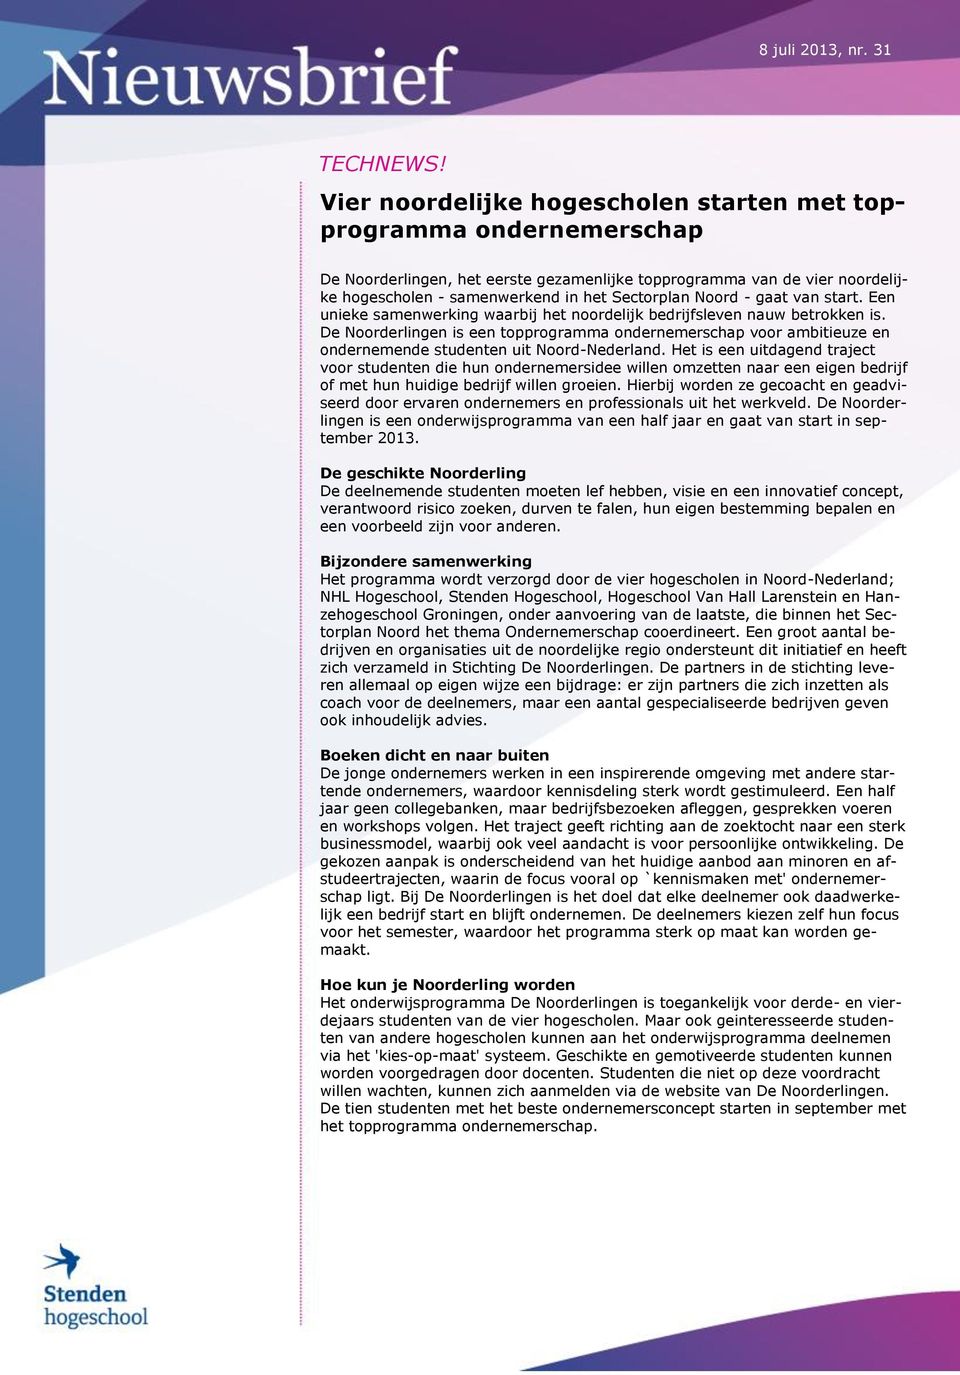 De Noorderlingen is een topprogramma ondernemerschap voor ambitieuze en ondernemende studenten uit Noord-Nederland.